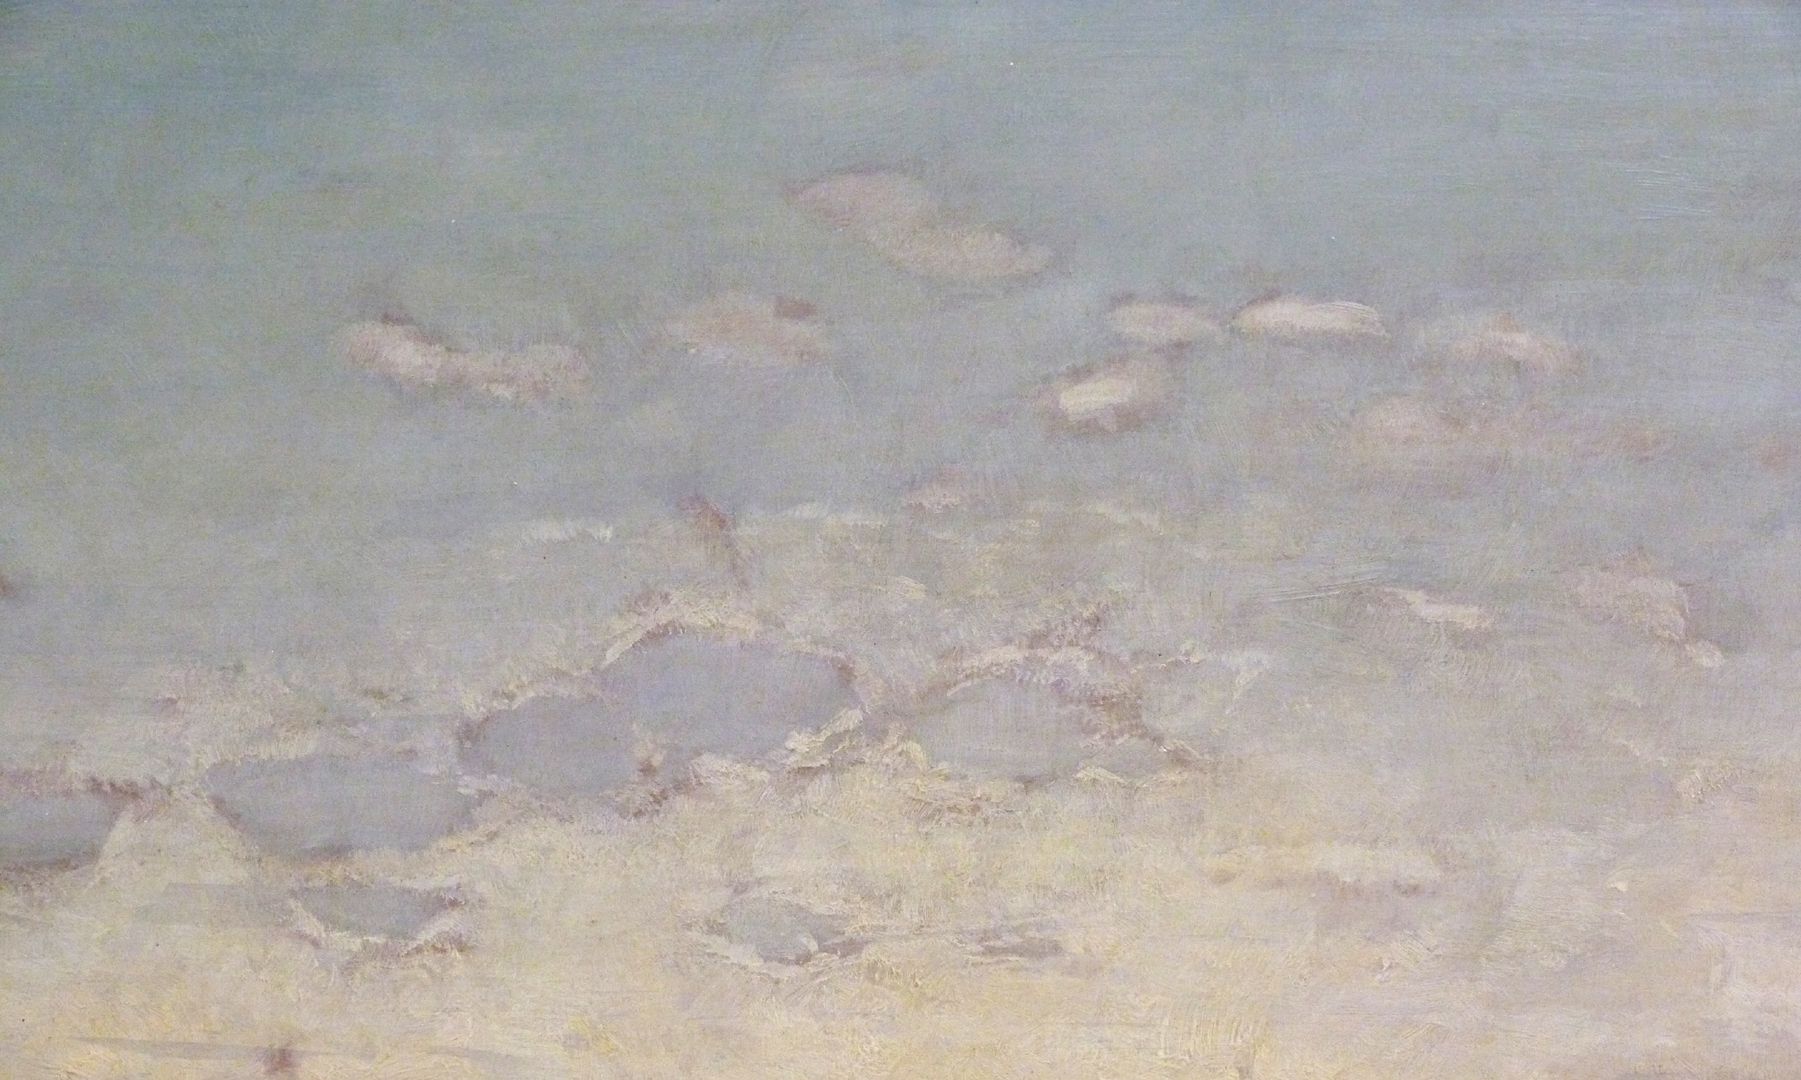 Main landscape Detail, sky